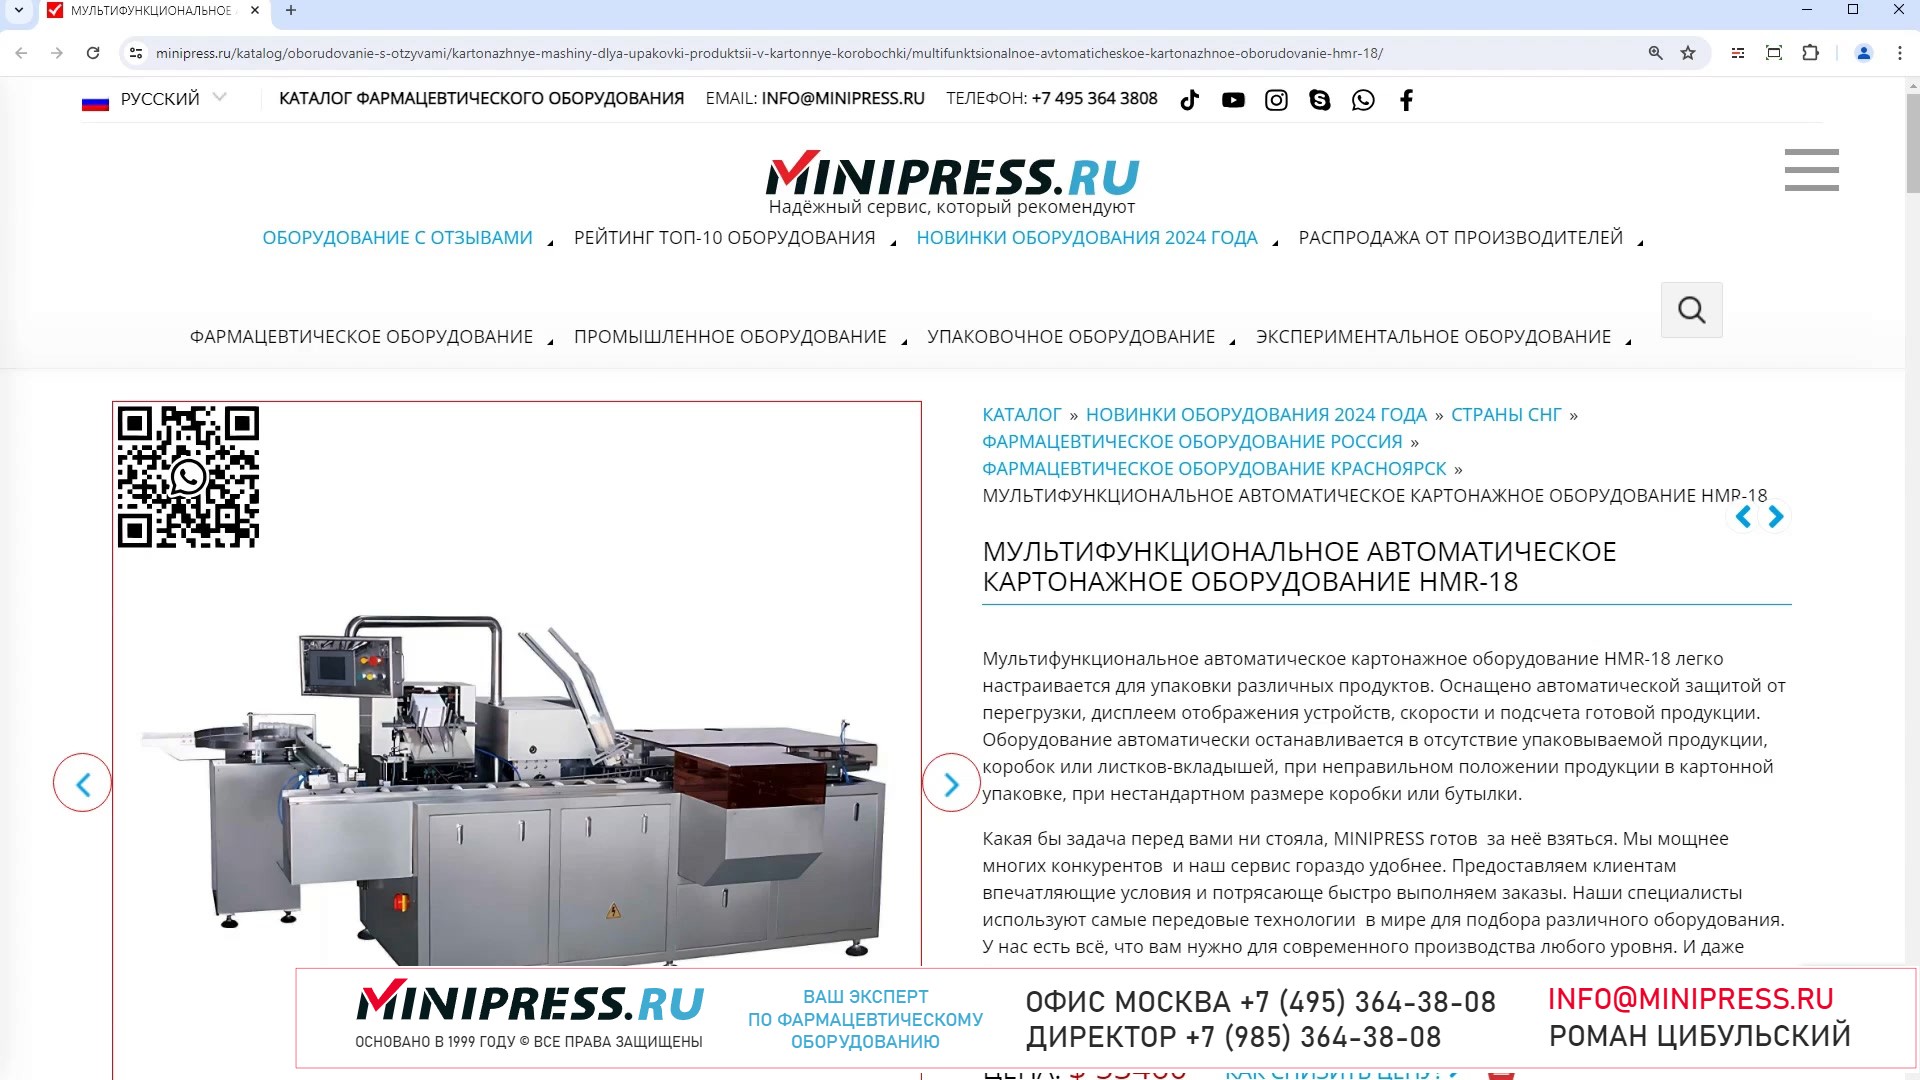 Minipress.ru Мультифункциональное автоматическое картонажное оборудование HMR-18